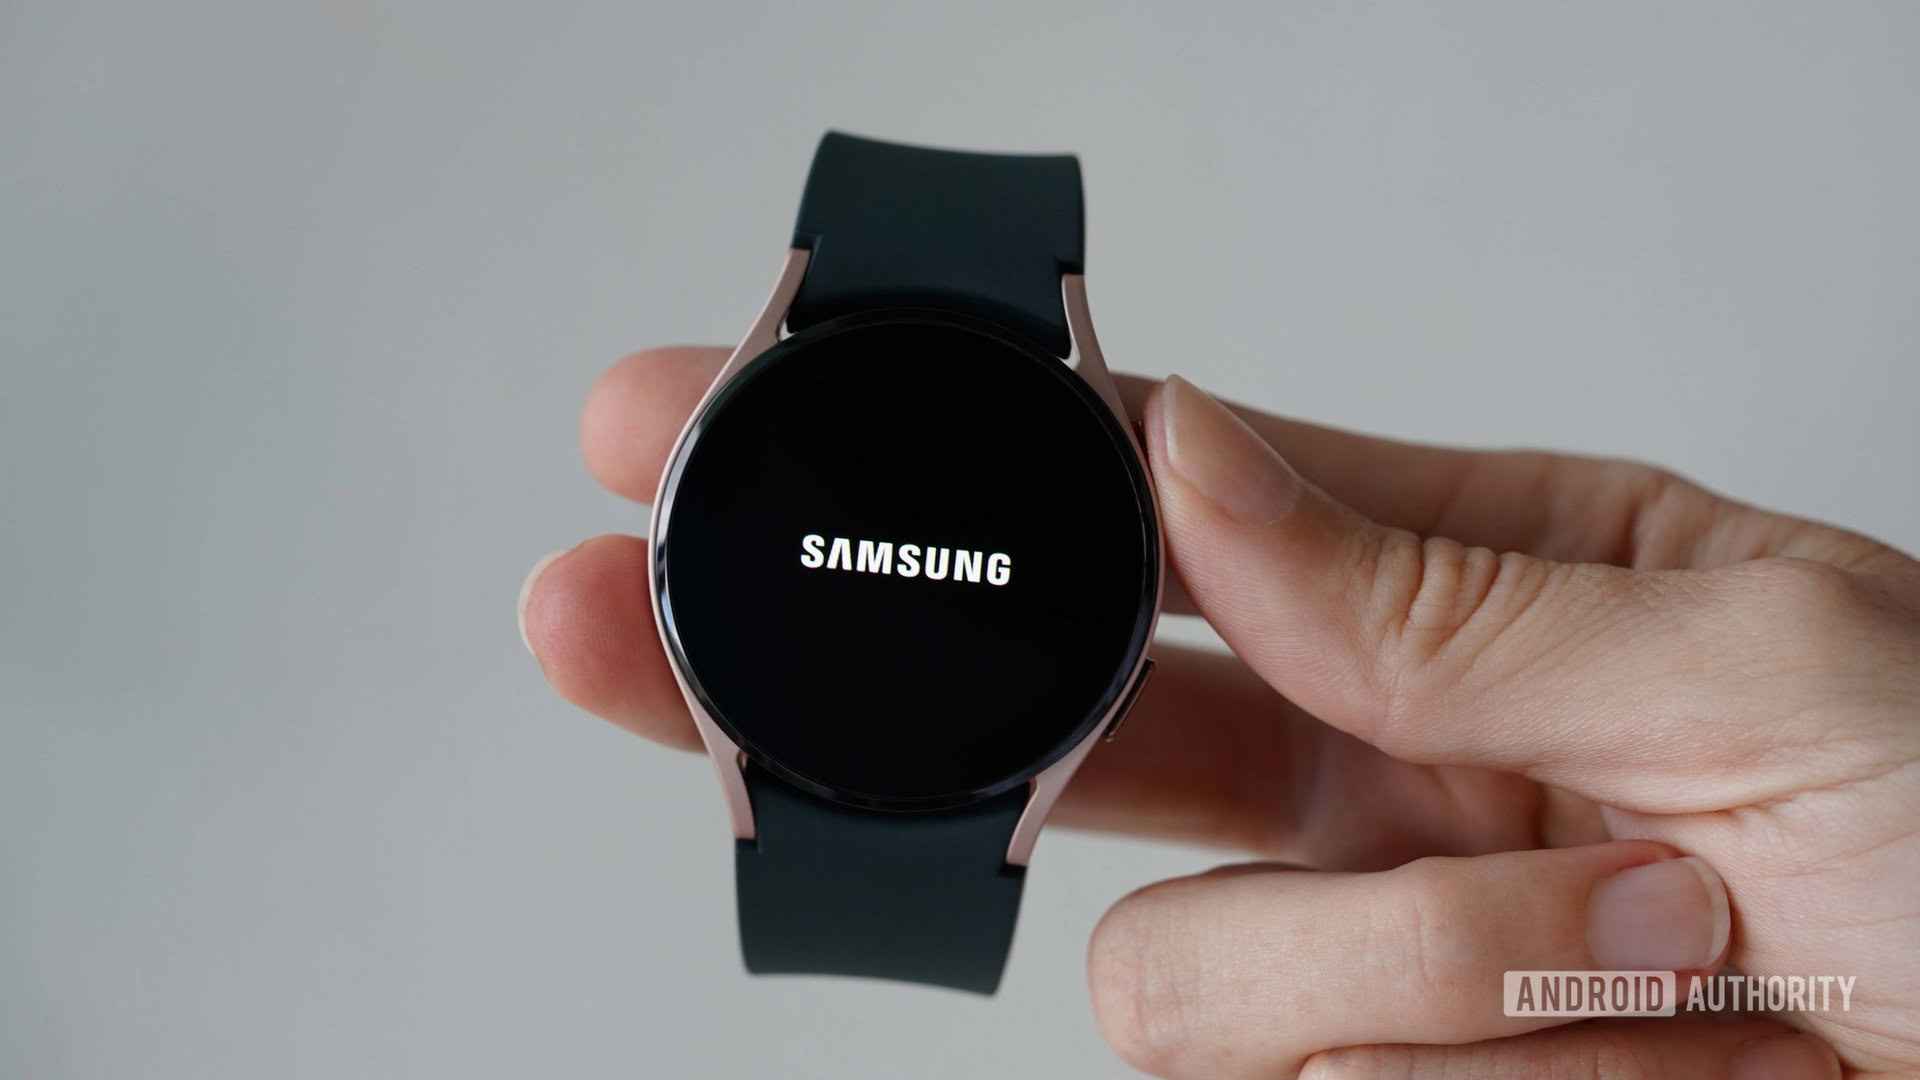 Cài đặt Samsung Galaxy Watch 4 chưa bao giờ dễ dàng đến thế, và đây là lý do tại sao bạn nên xem hình ảnh liên quan đến hướng dẫn cài đặt sản phẩm. Từ bắt đầu cài đặt đến kết nối và thêm các ứng dụng, những hình ảnh này sẽ giúp bạn hiểu rõ hơn về các bước cài đặt cần thiết cho chiếc đồng hồ thông minh này.